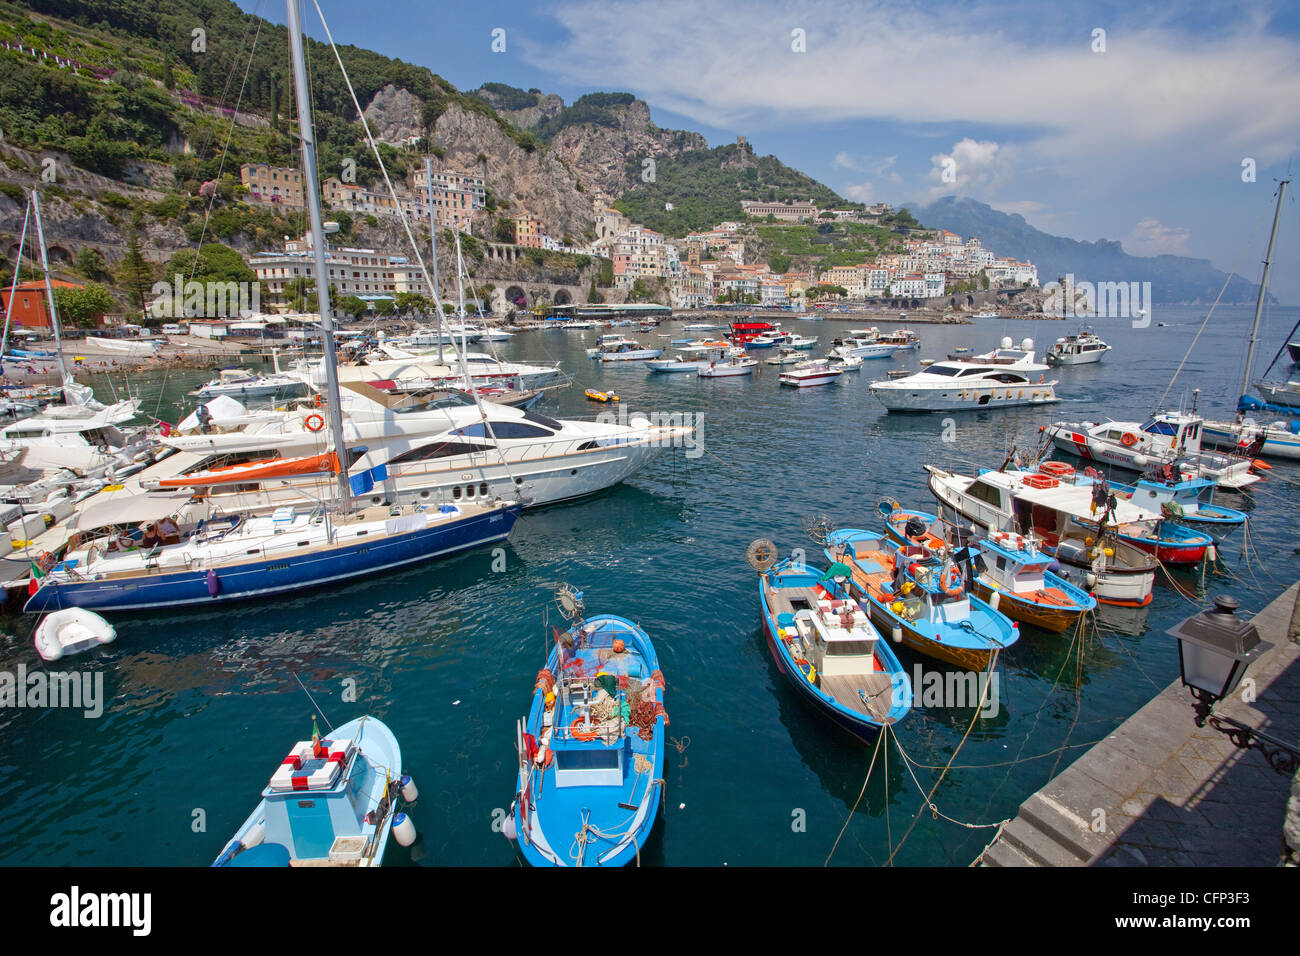 Les bateaux de pêche et les navires dans le port d'Amalfi, côte amalfitaine, UNESCO World Heritage site, Campanie, Italie, Méditerranée, Europe Banque D'Images